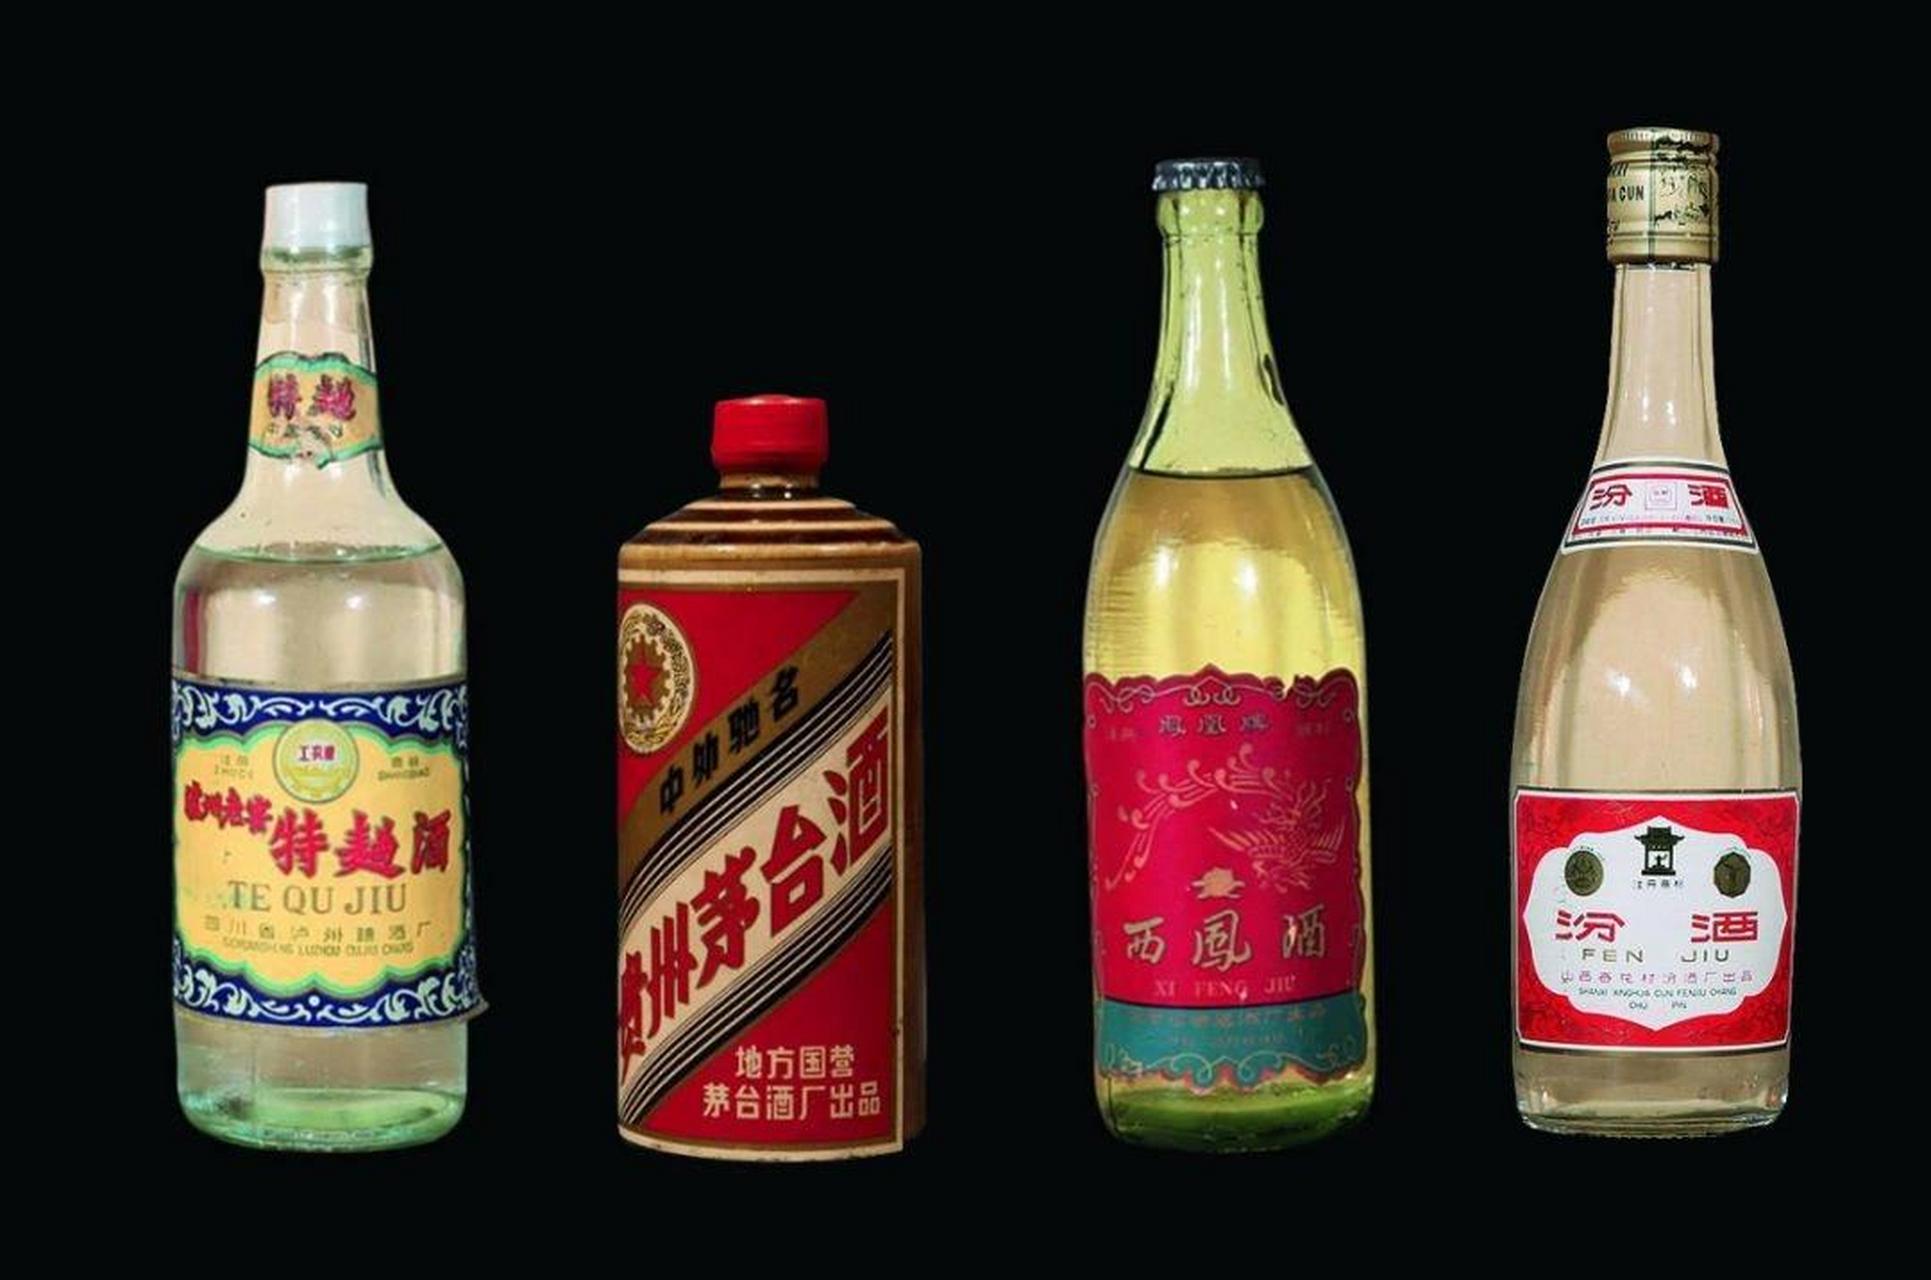 中国四大名酒 四大名酒是指在1952年的第一次全国评酒会上评选出的四